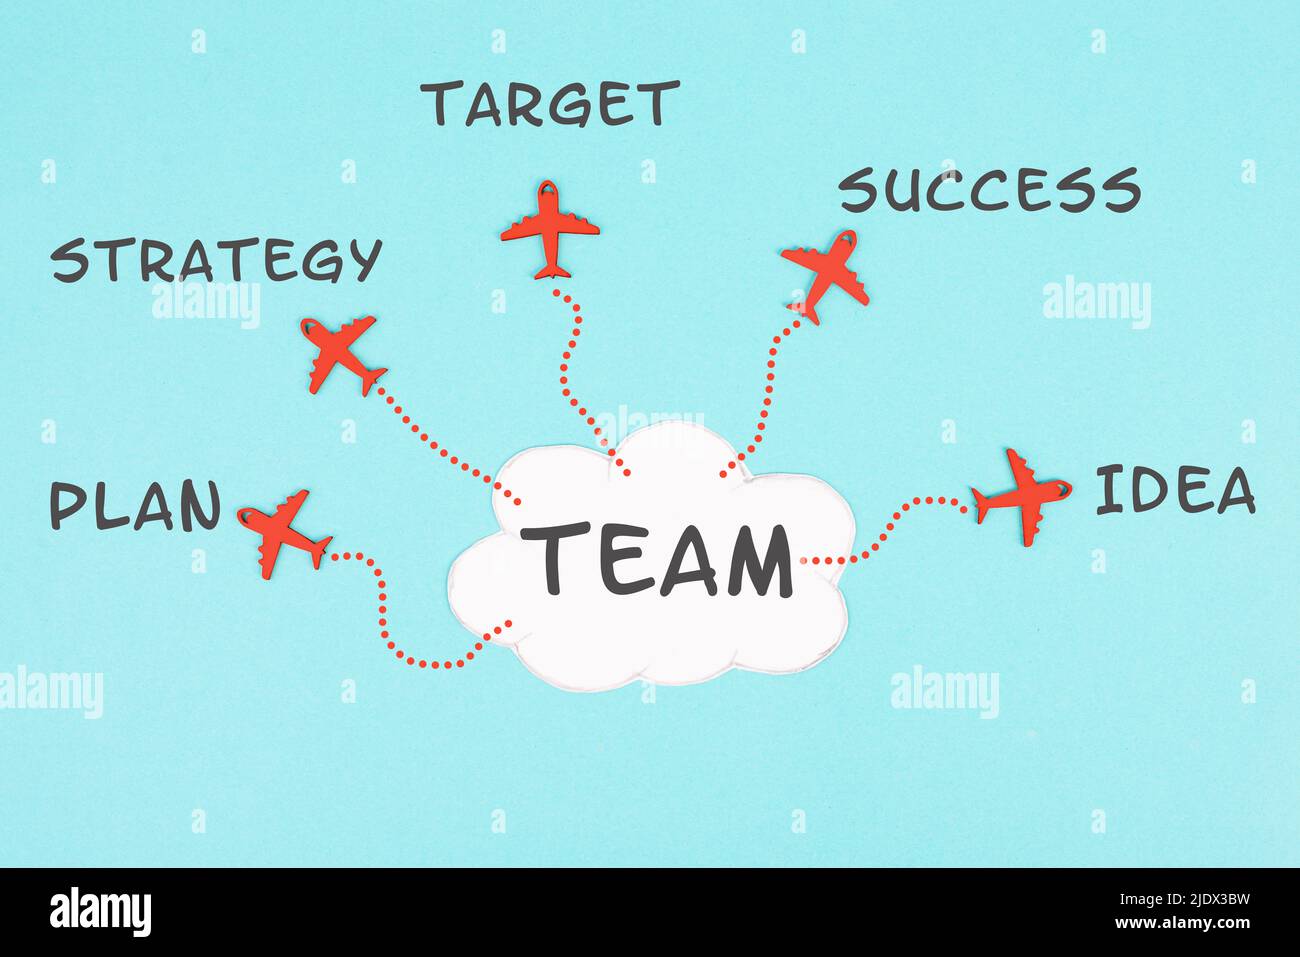 Wolke mit dem Wort Team, rote Flugzeuge fliegen in verschiedene Richtungen, Wörter wie Plan, Ziel, Idee, Strategie und Erfolg stehen am Himmel, Tee Stockfoto